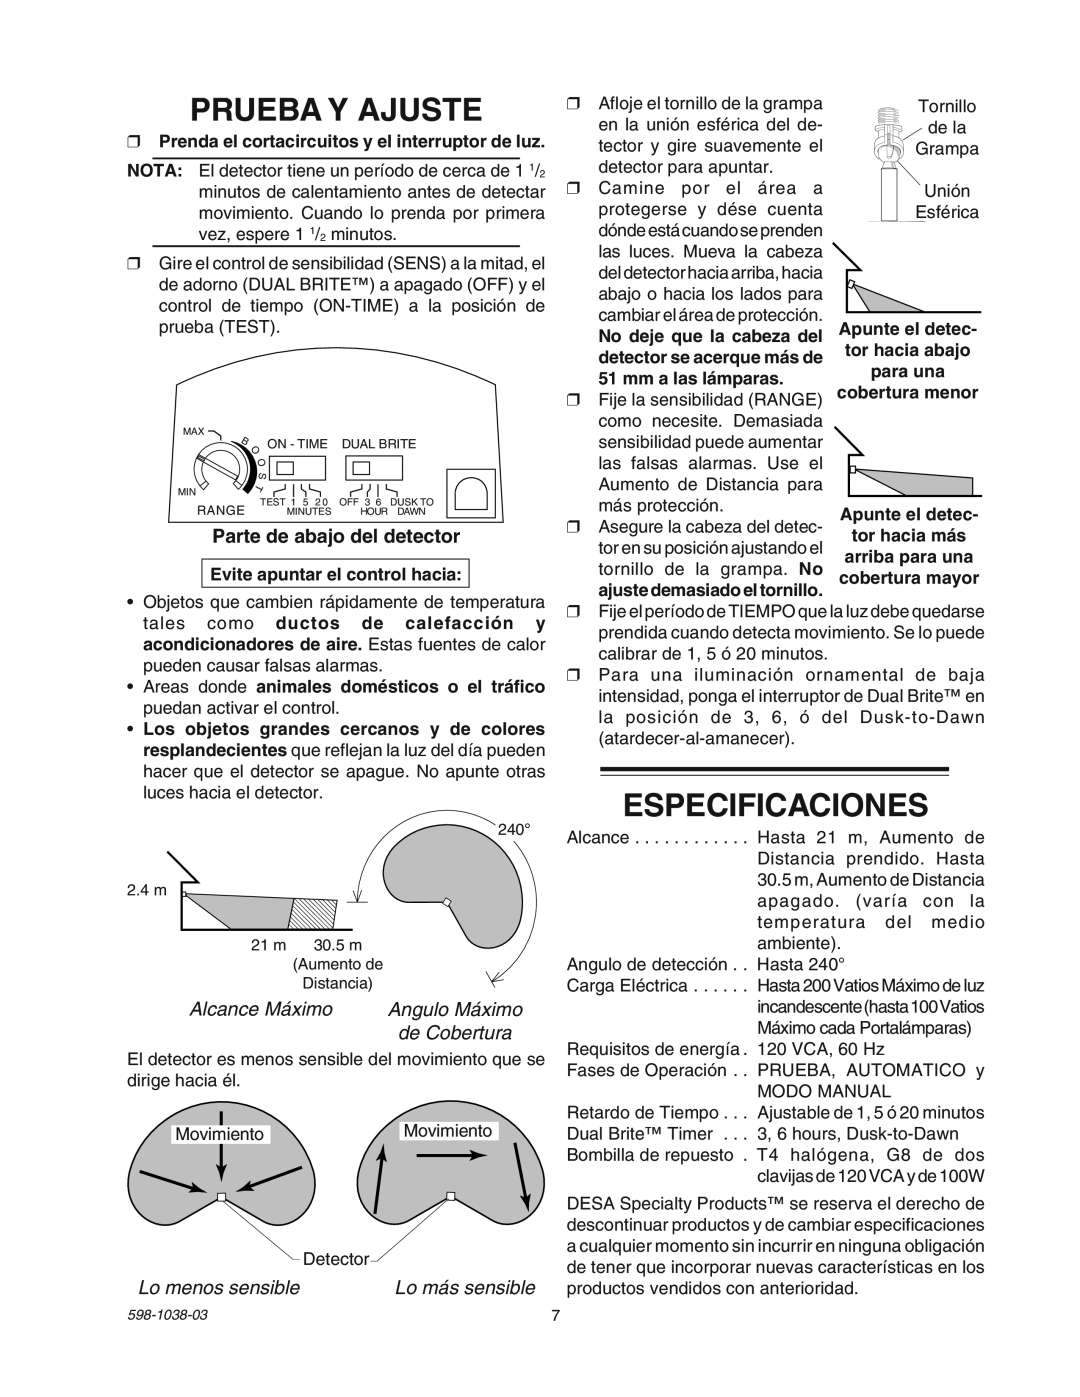 Heath Zenith SL-5597 manual Prueba Y Ajuste, Especificaciones, Parte de abajo del detector, Alcance Máximo, de Cobertura 